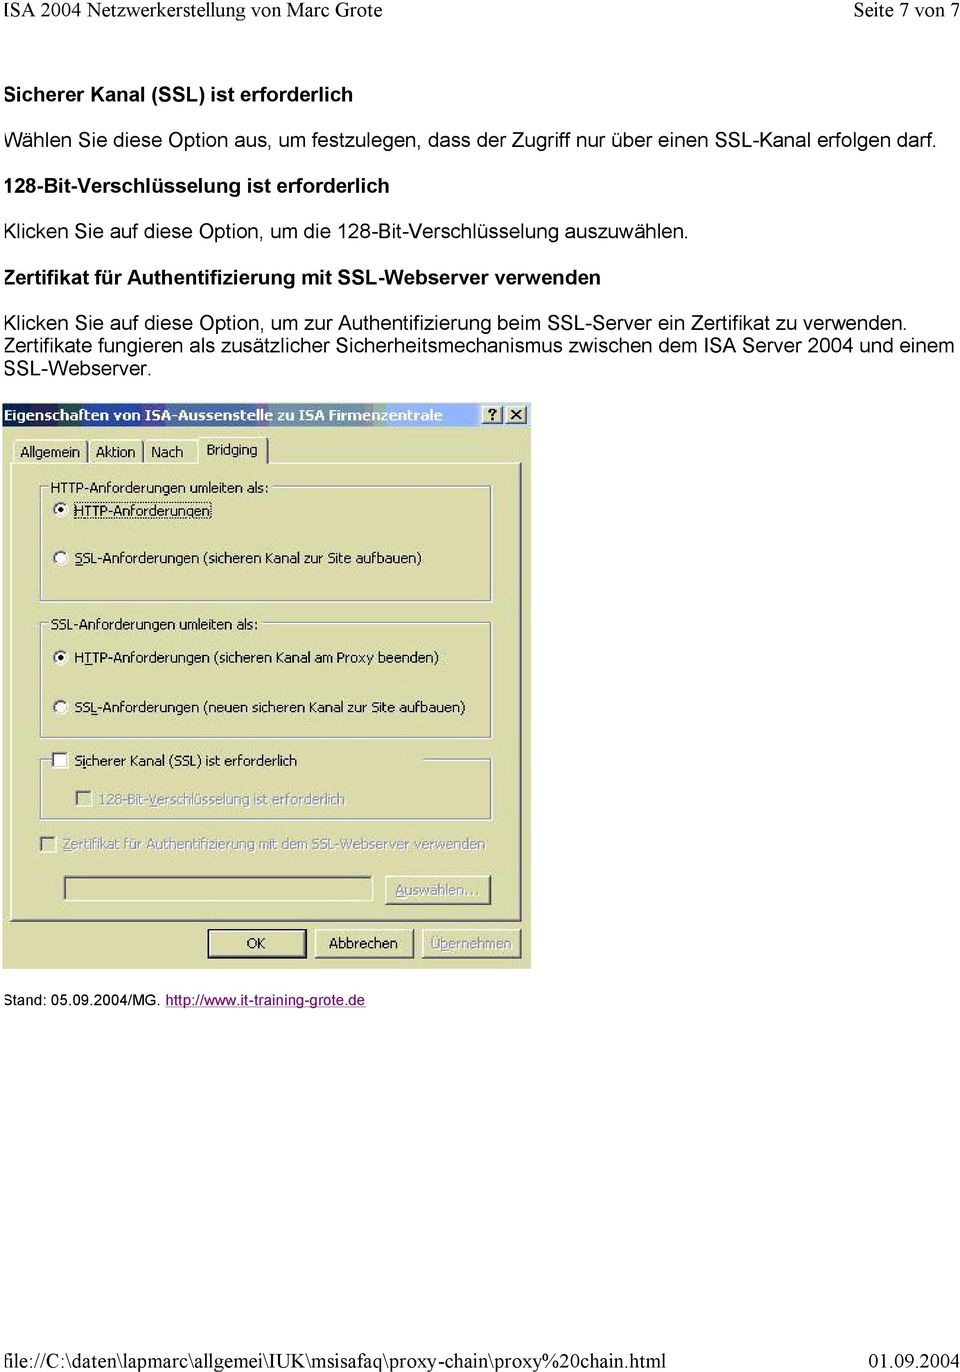 Zertifikat für Authentifizierung mit SSL-Webserver verwenden Klicken Sie auf diese Option, um zur Authentifizierung beim SSL-Server ein Zertifikat zu